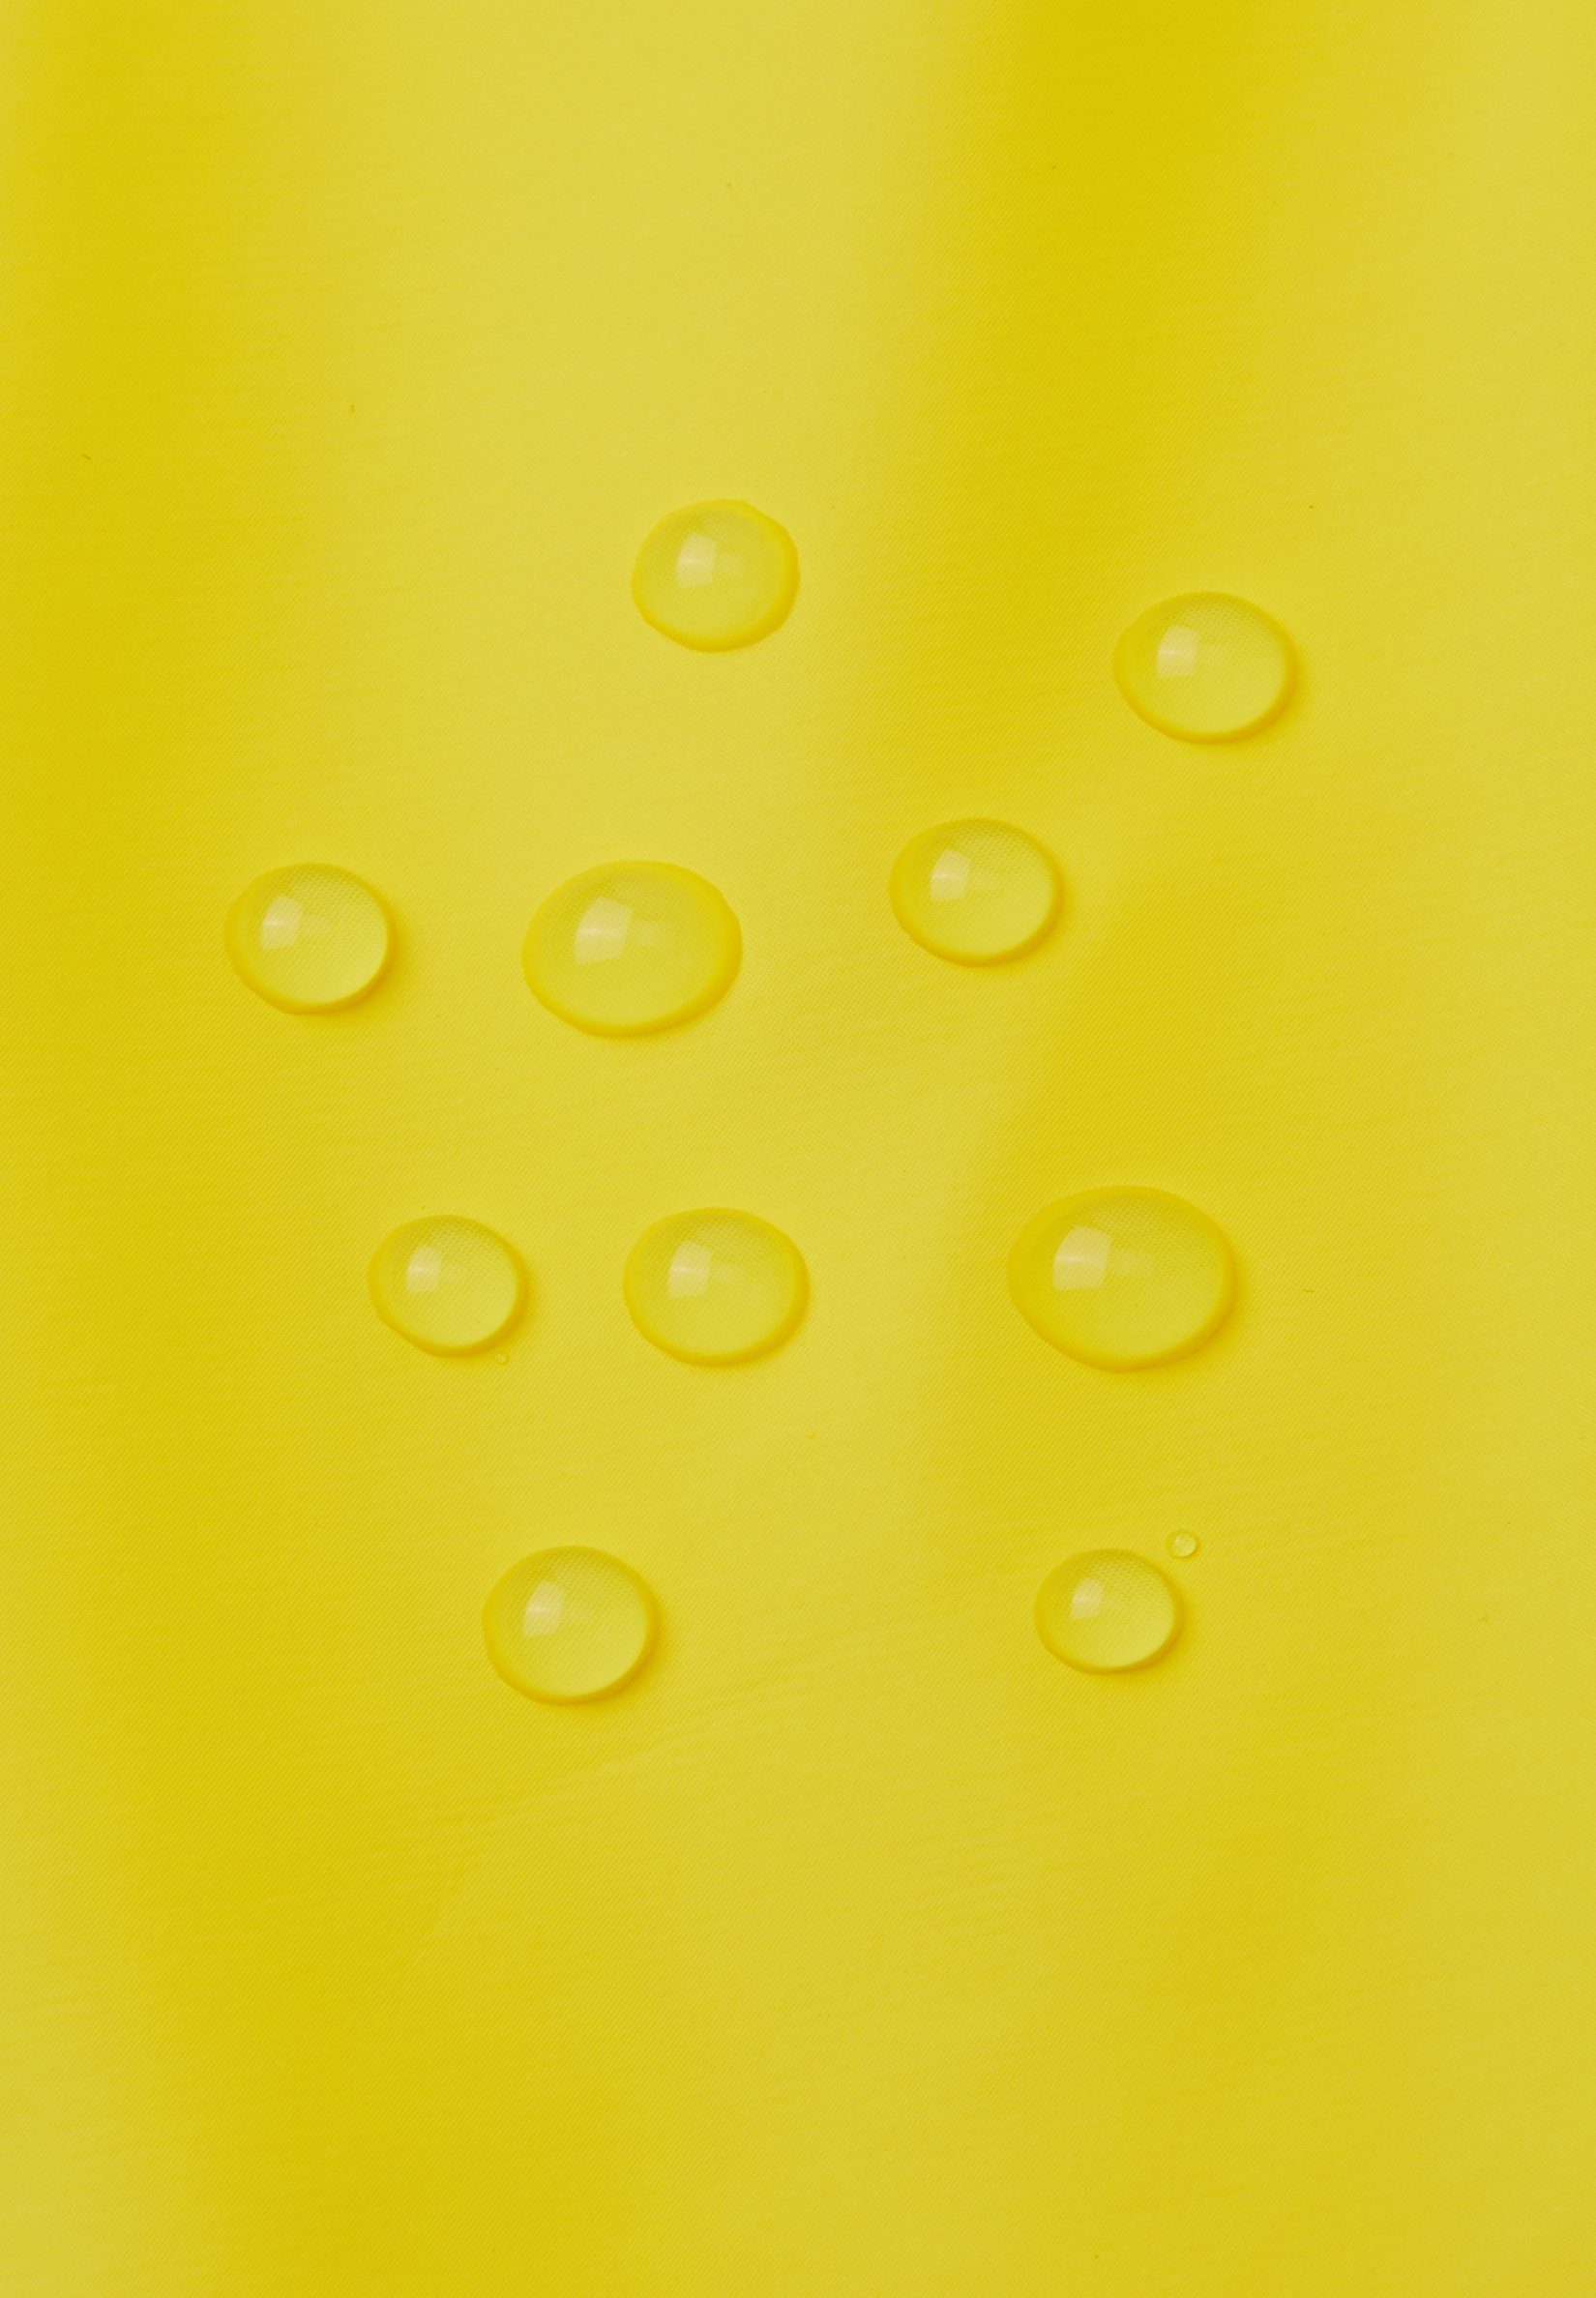 reima Regenhut wasserdicht, von winddicht frei Rainy und Yellow PVC